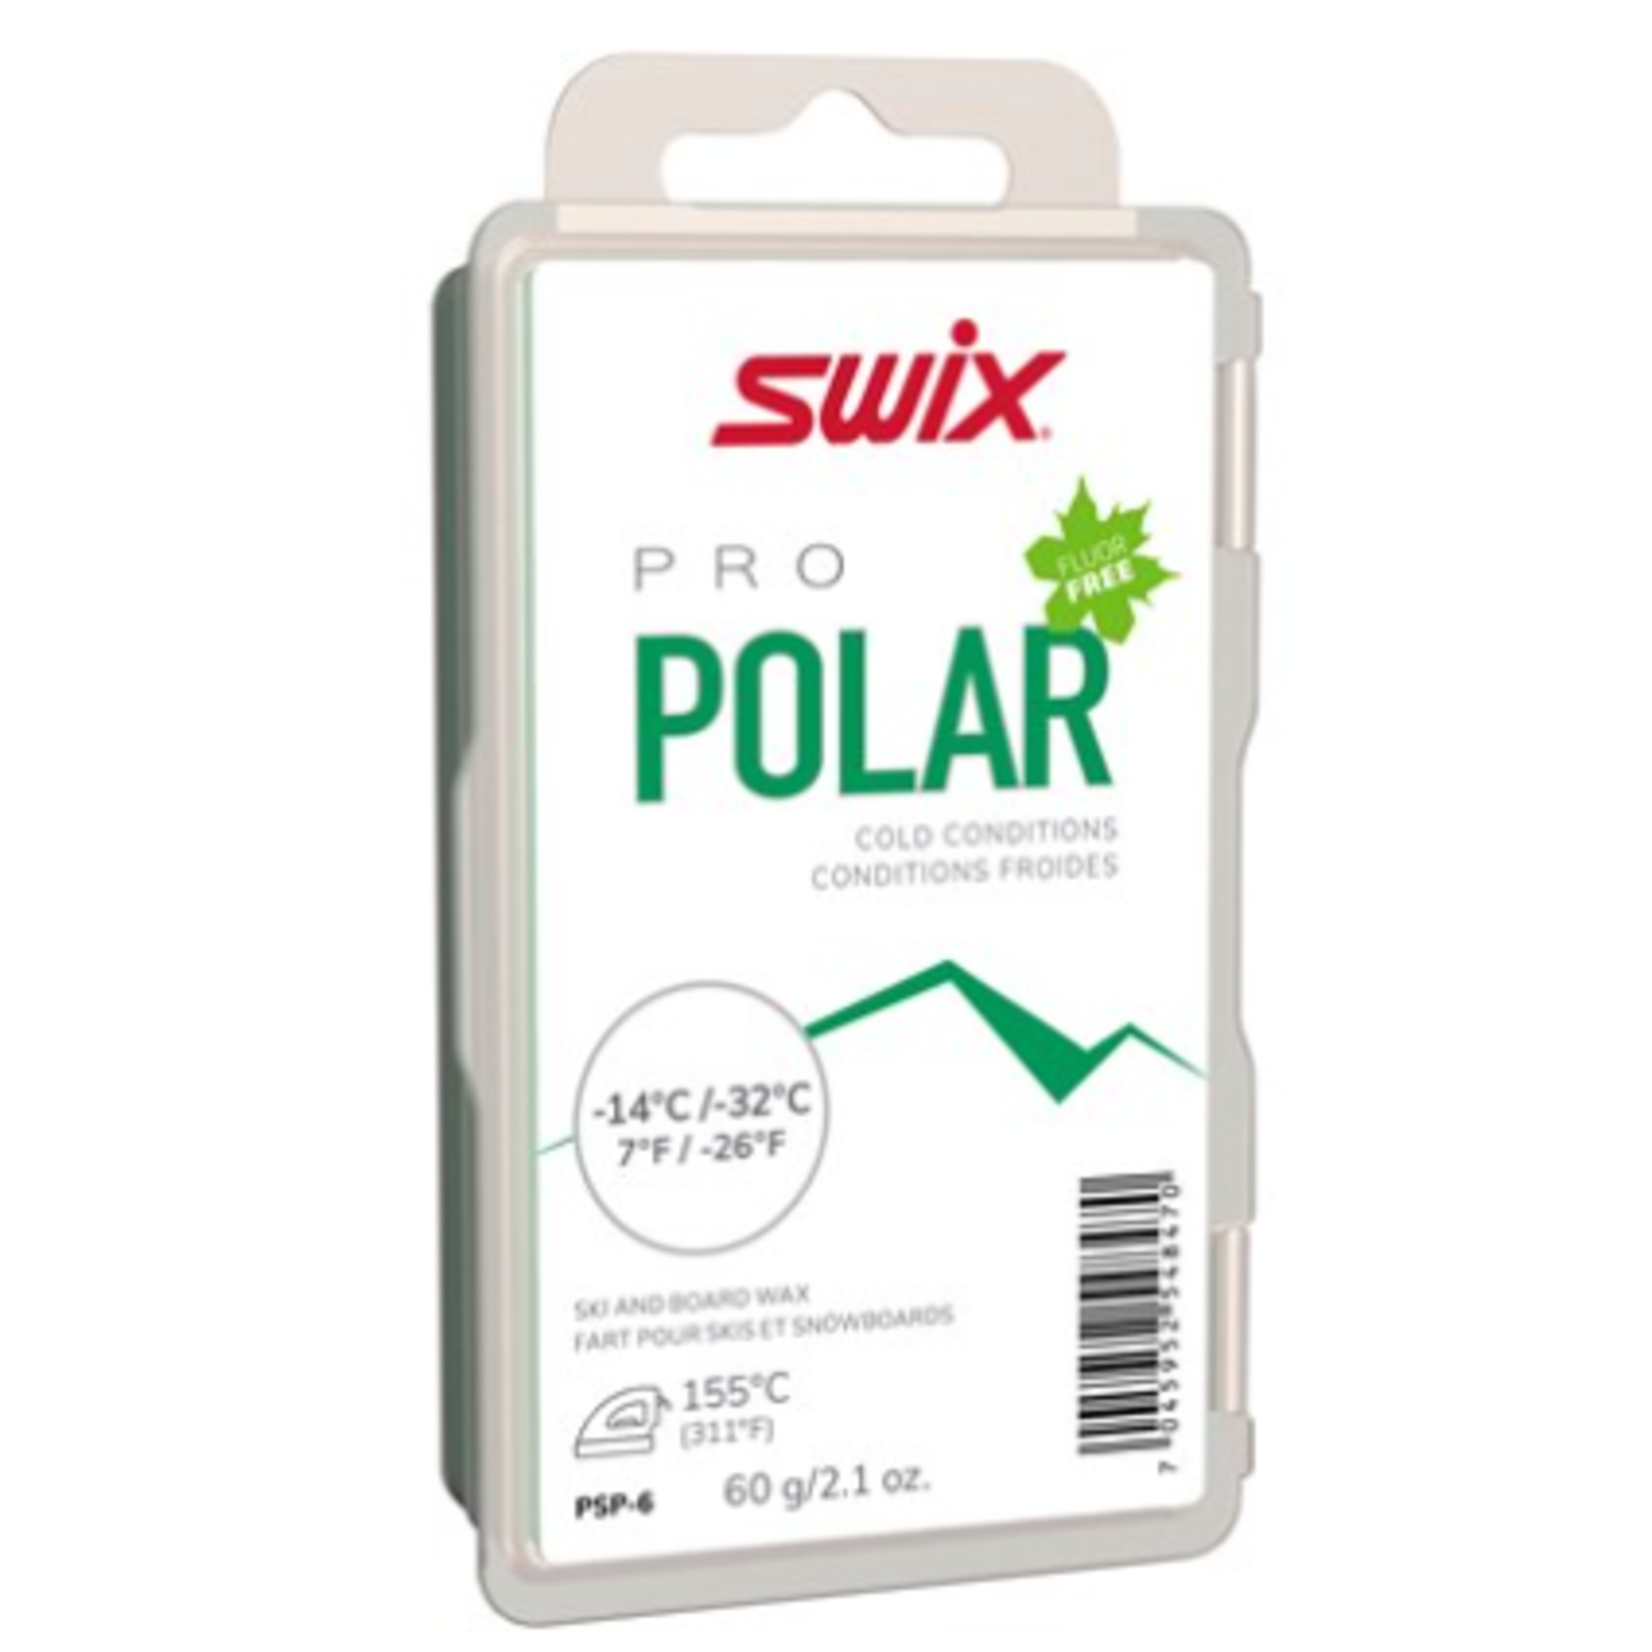 Swix Swix PS Polar, -14°C/-32°C, 60g